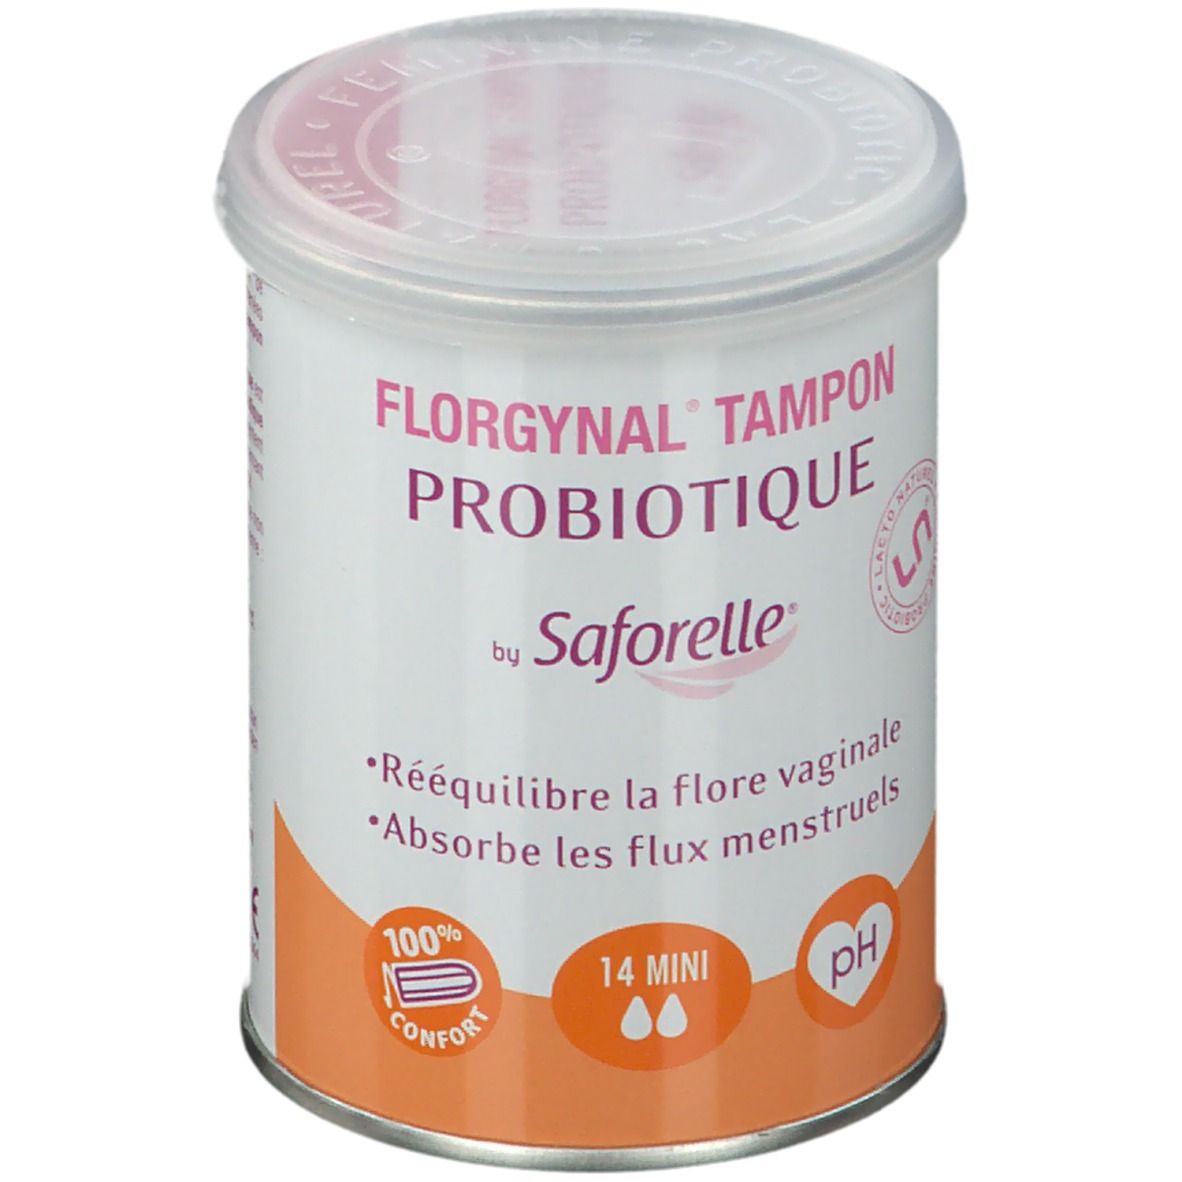 Saforelle® Florgynal Tampon Probiotique 14 Mini pc(s) tampon(s)